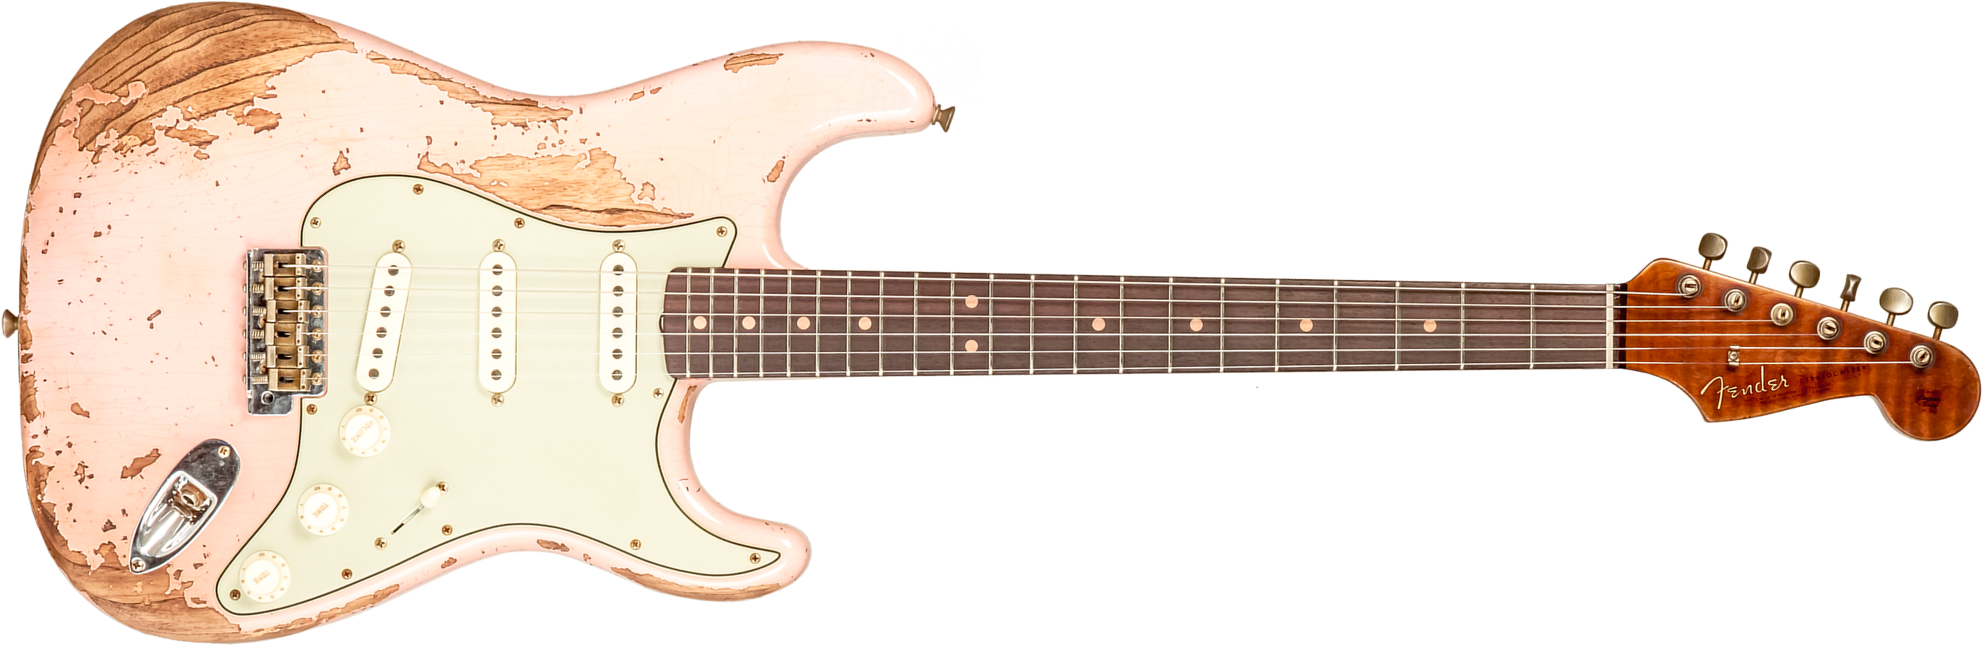 Fender Custom Shop Strat 1963 3s Trem Rw #r136150 - Super Heavy Relic Shell Pink - Guitare Électrique Forme Str - Main picture